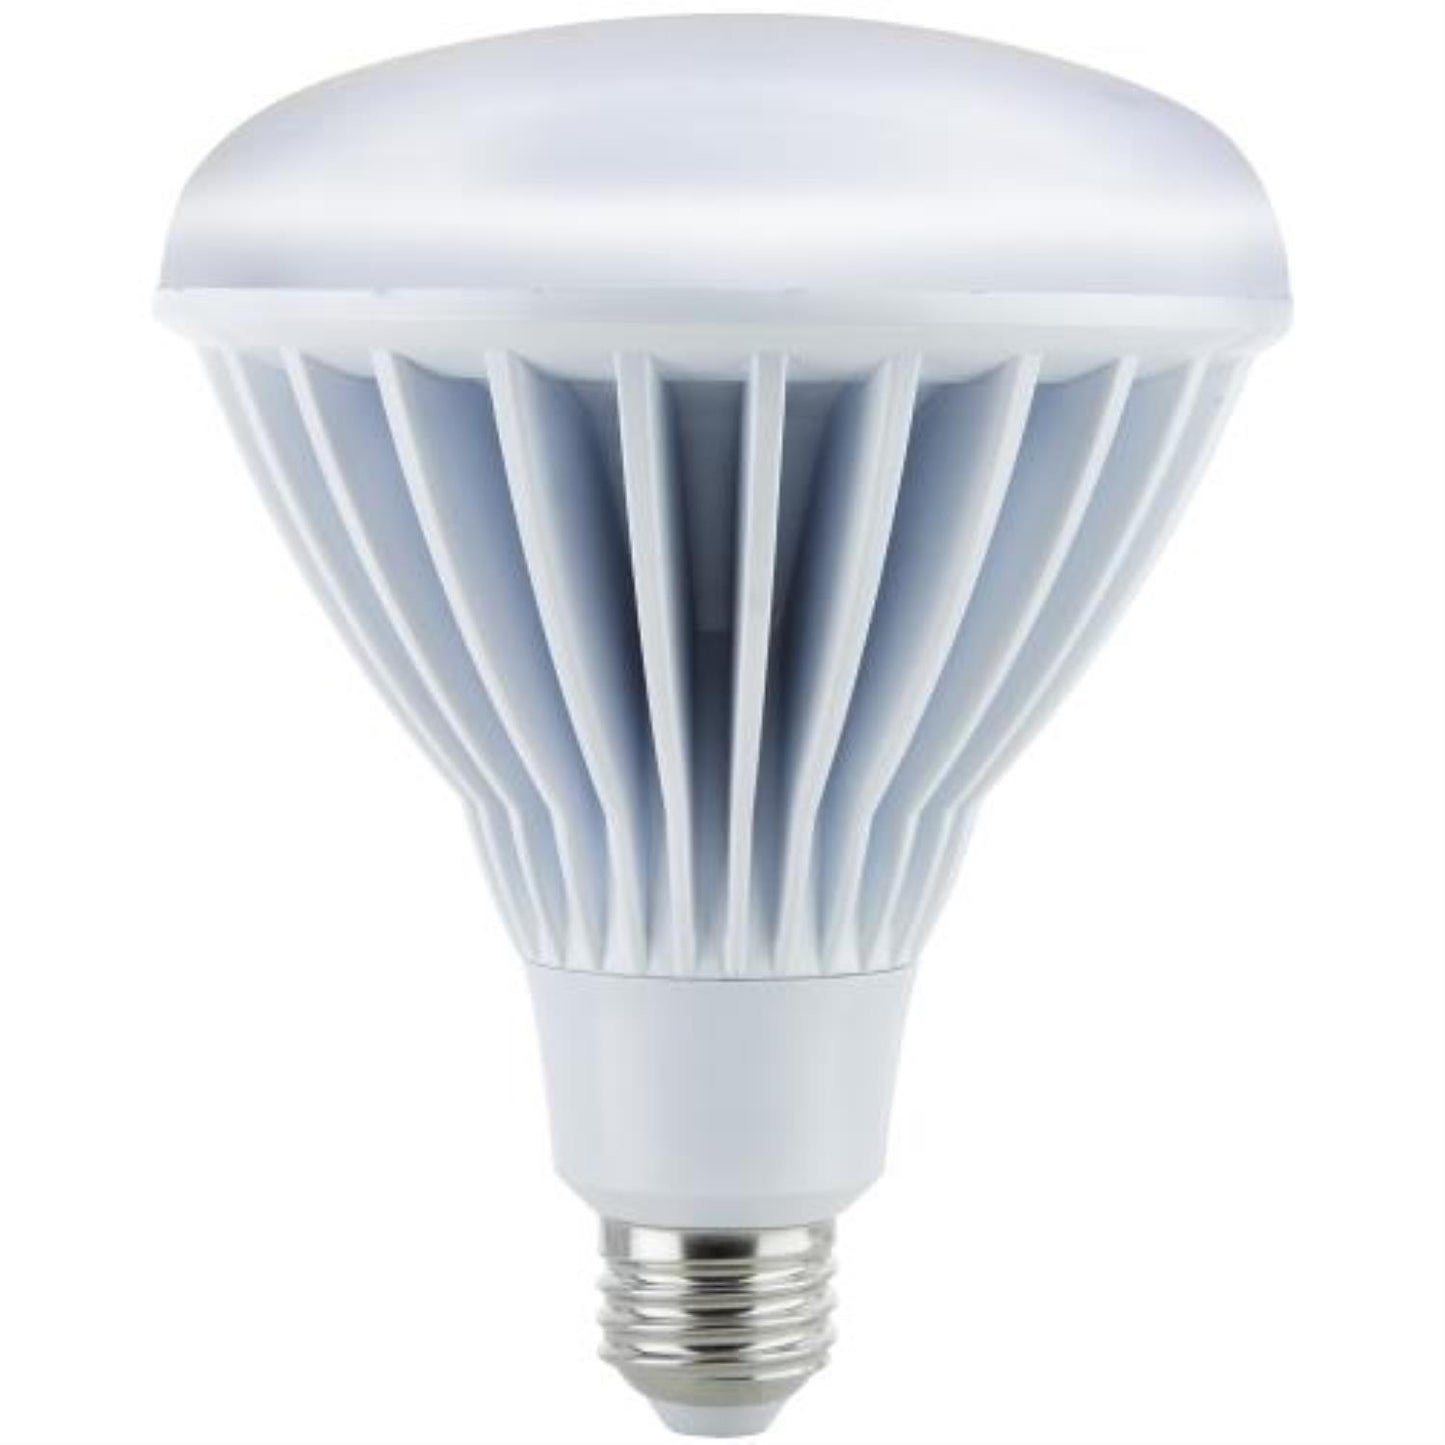 Sunlite LED 20 Watt Dimmable BR40 Reflector 3000K Warm White 1400 Lumens Light Bulb